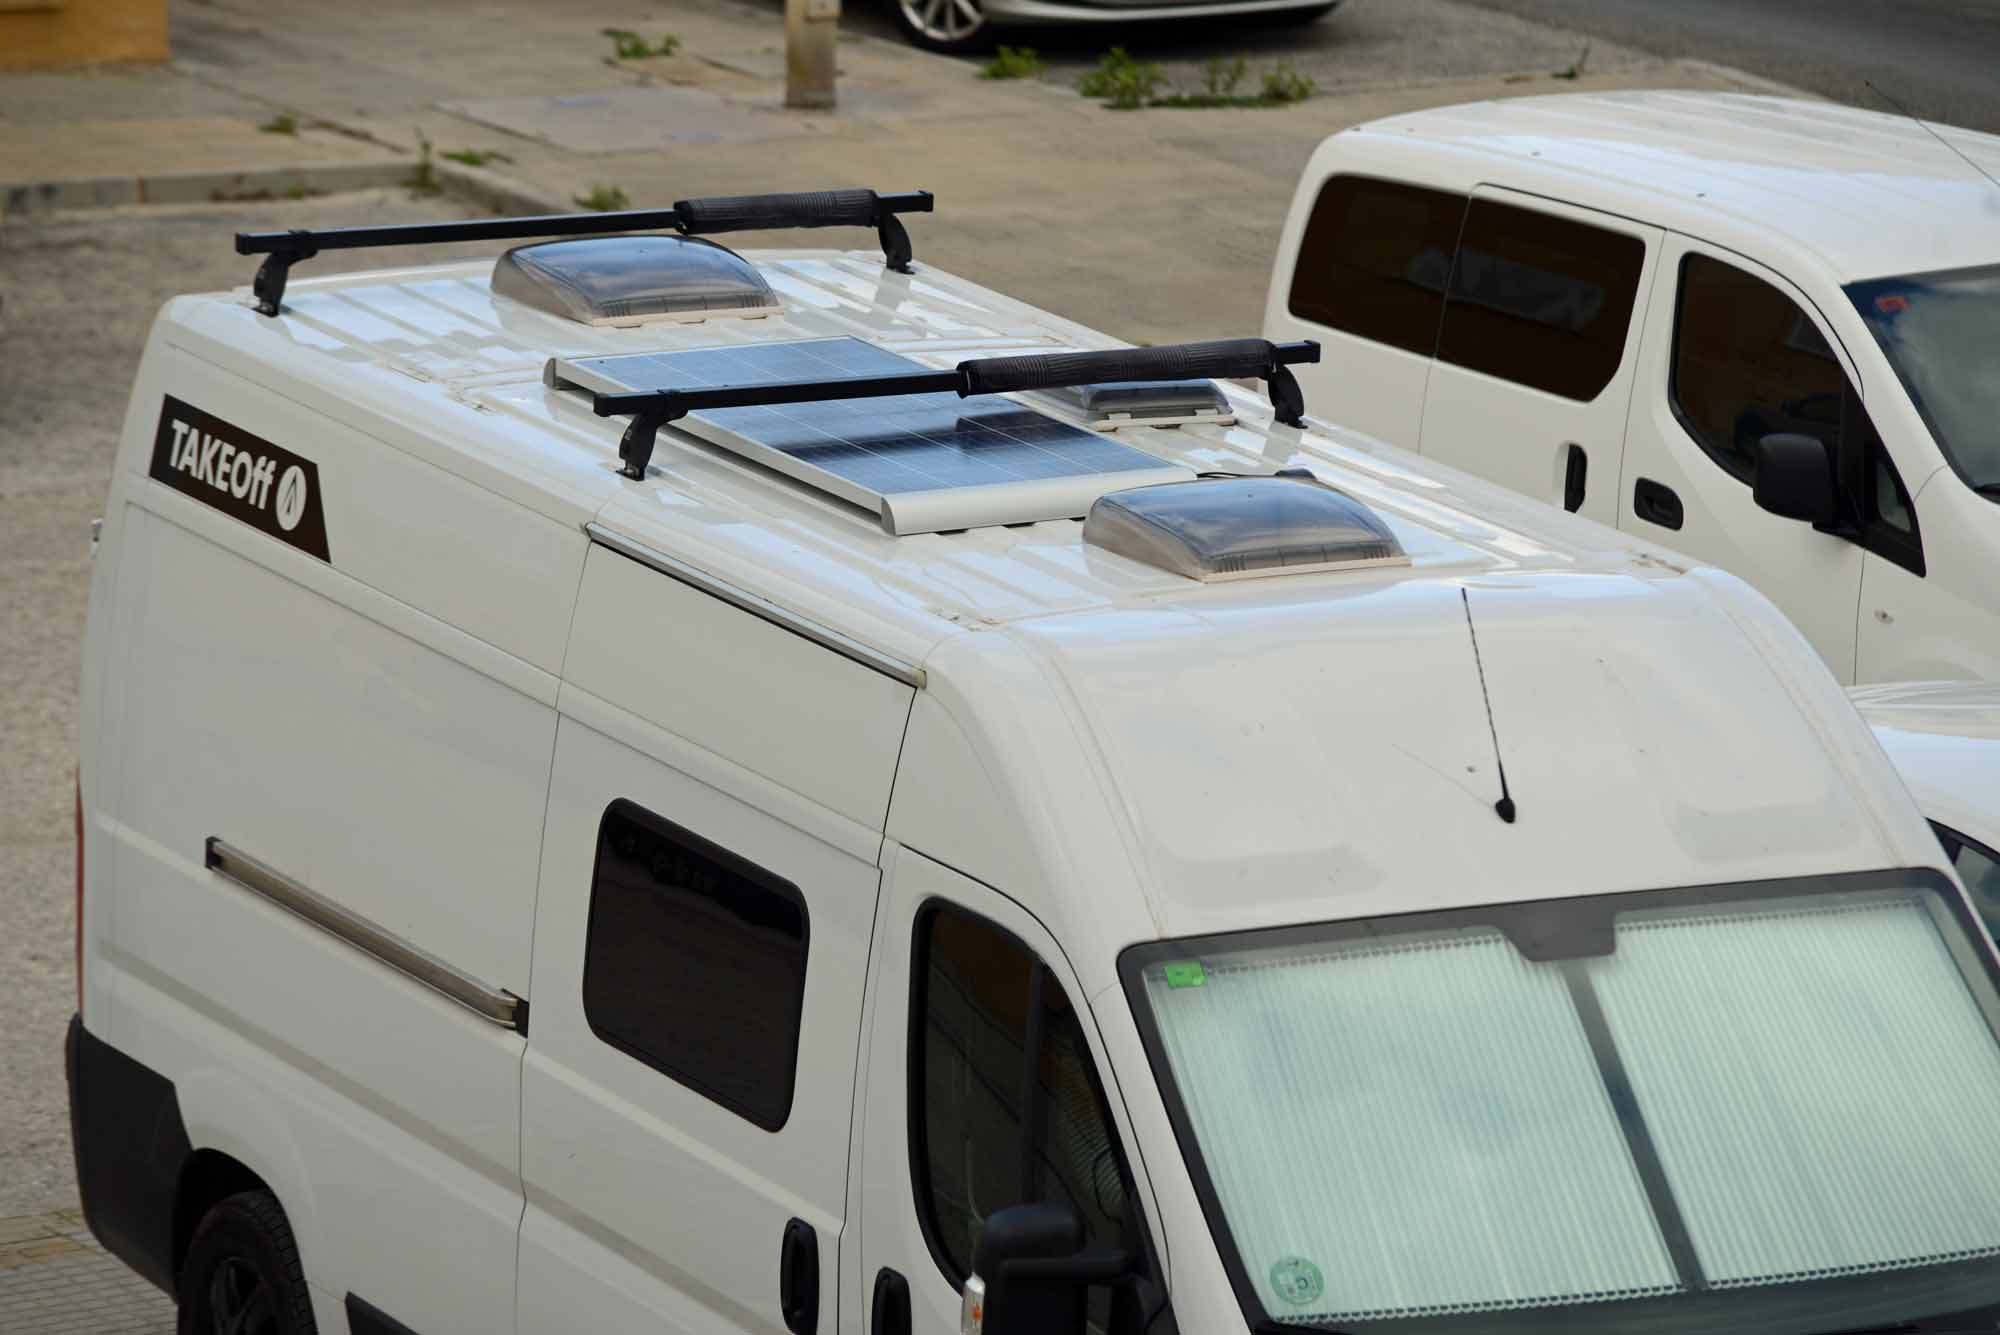 Fotovolaico systemas solares de autocaravan y carava